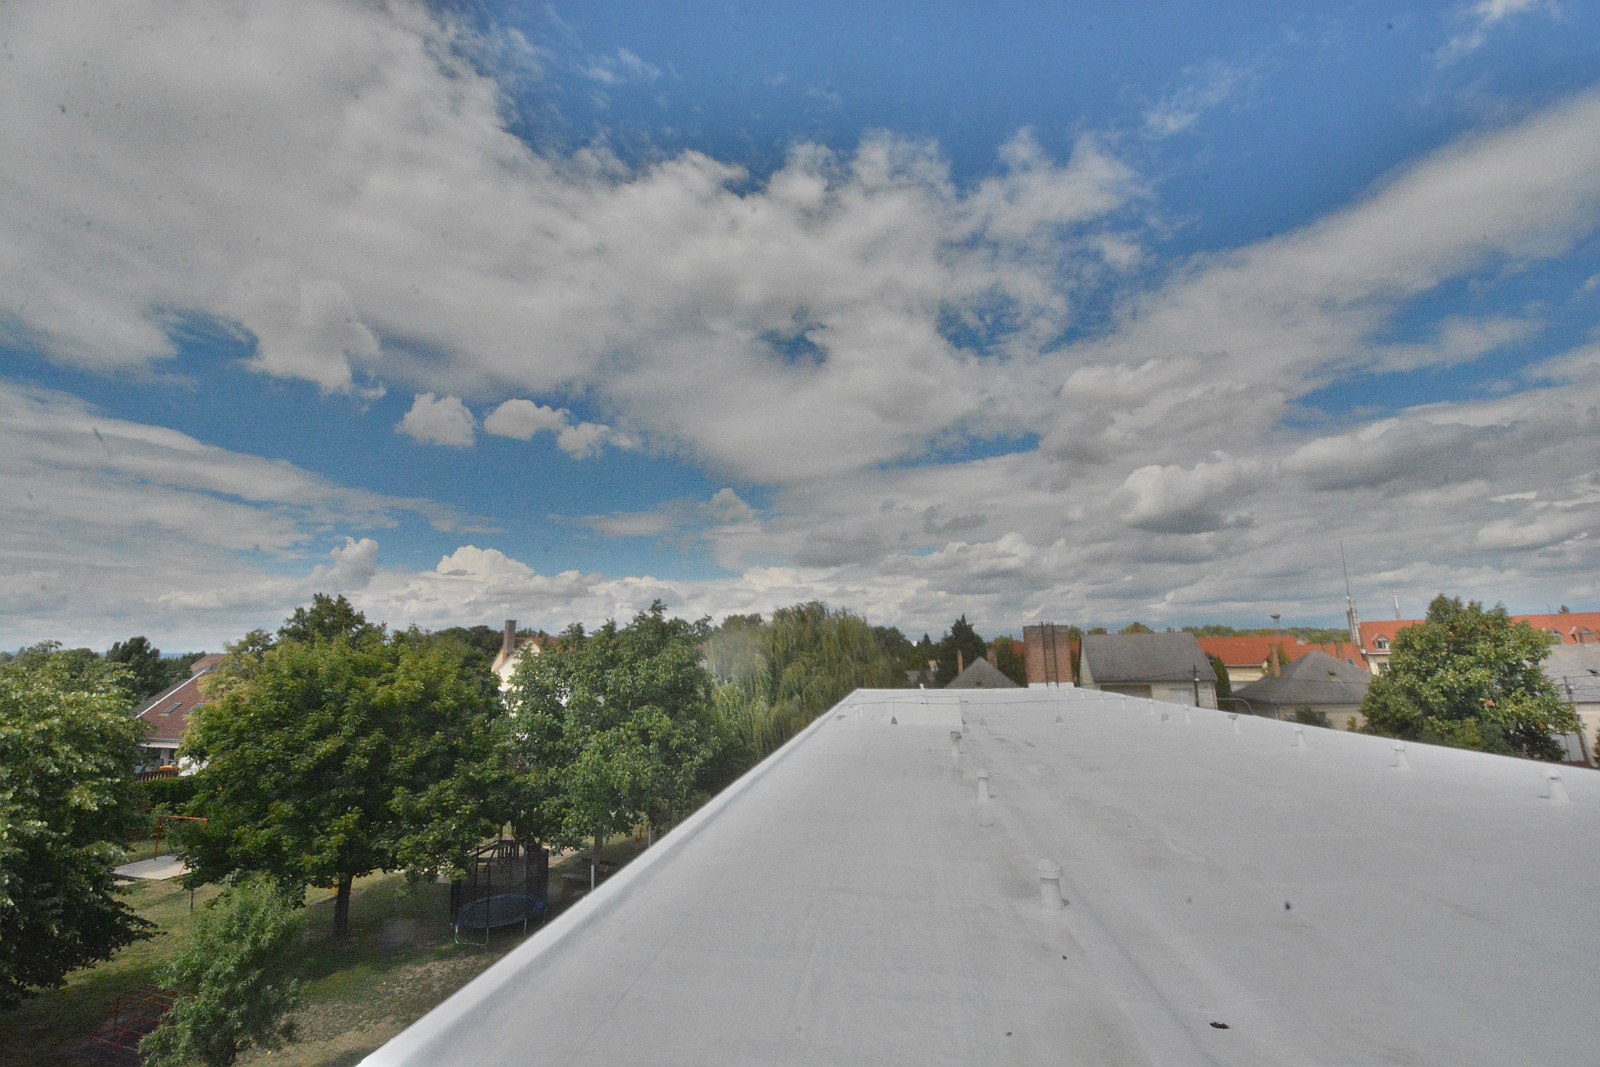 Elkészült a Nefelejcs Óvoda tetőfelújítása